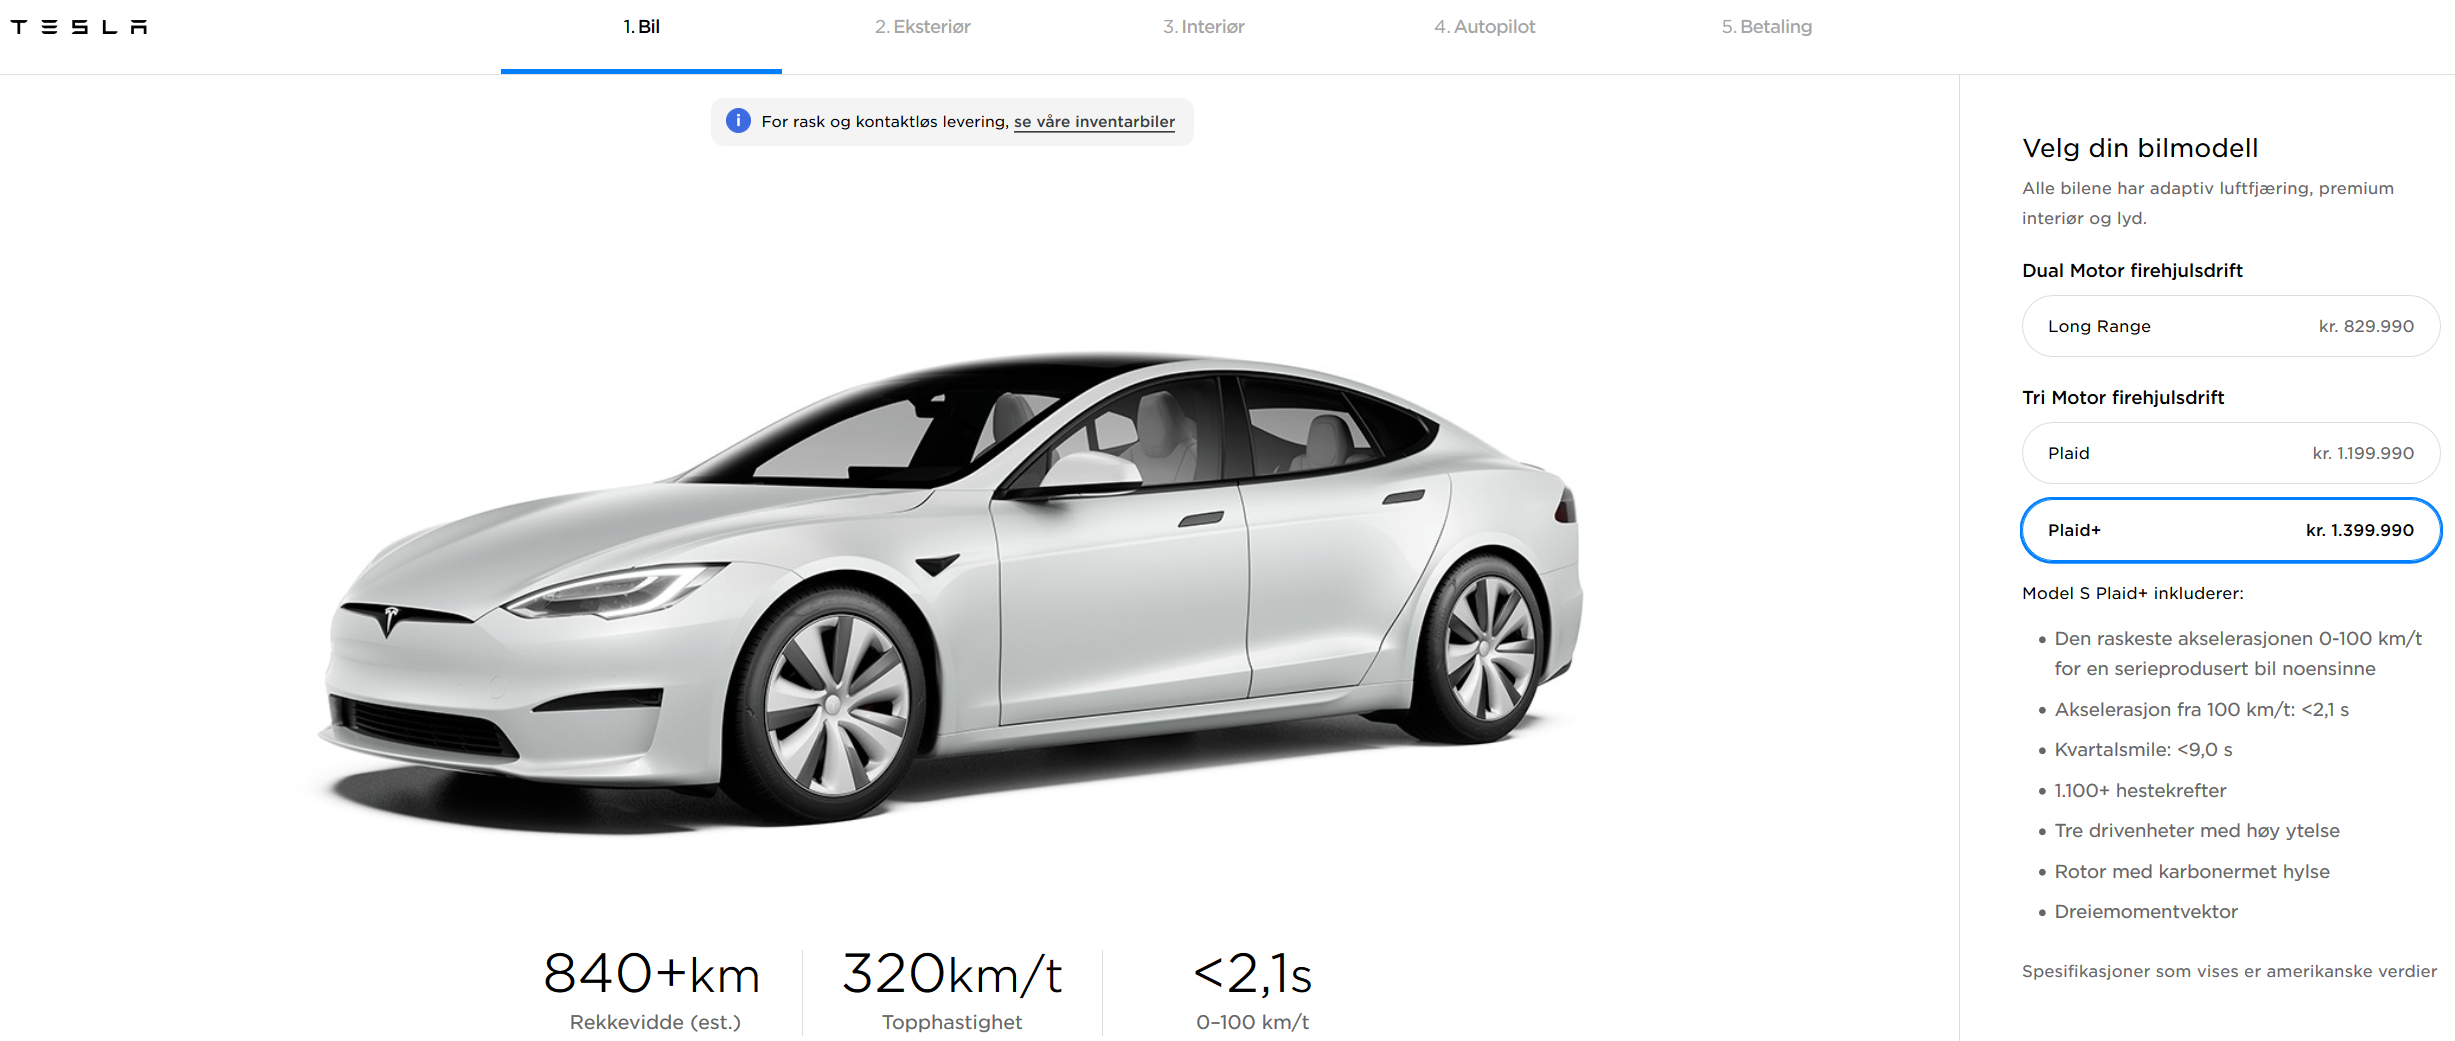 Allerede nå kan du bestille en Model S Plaid og Plaid+, men du må vente til sent i 2021 før den leveres.